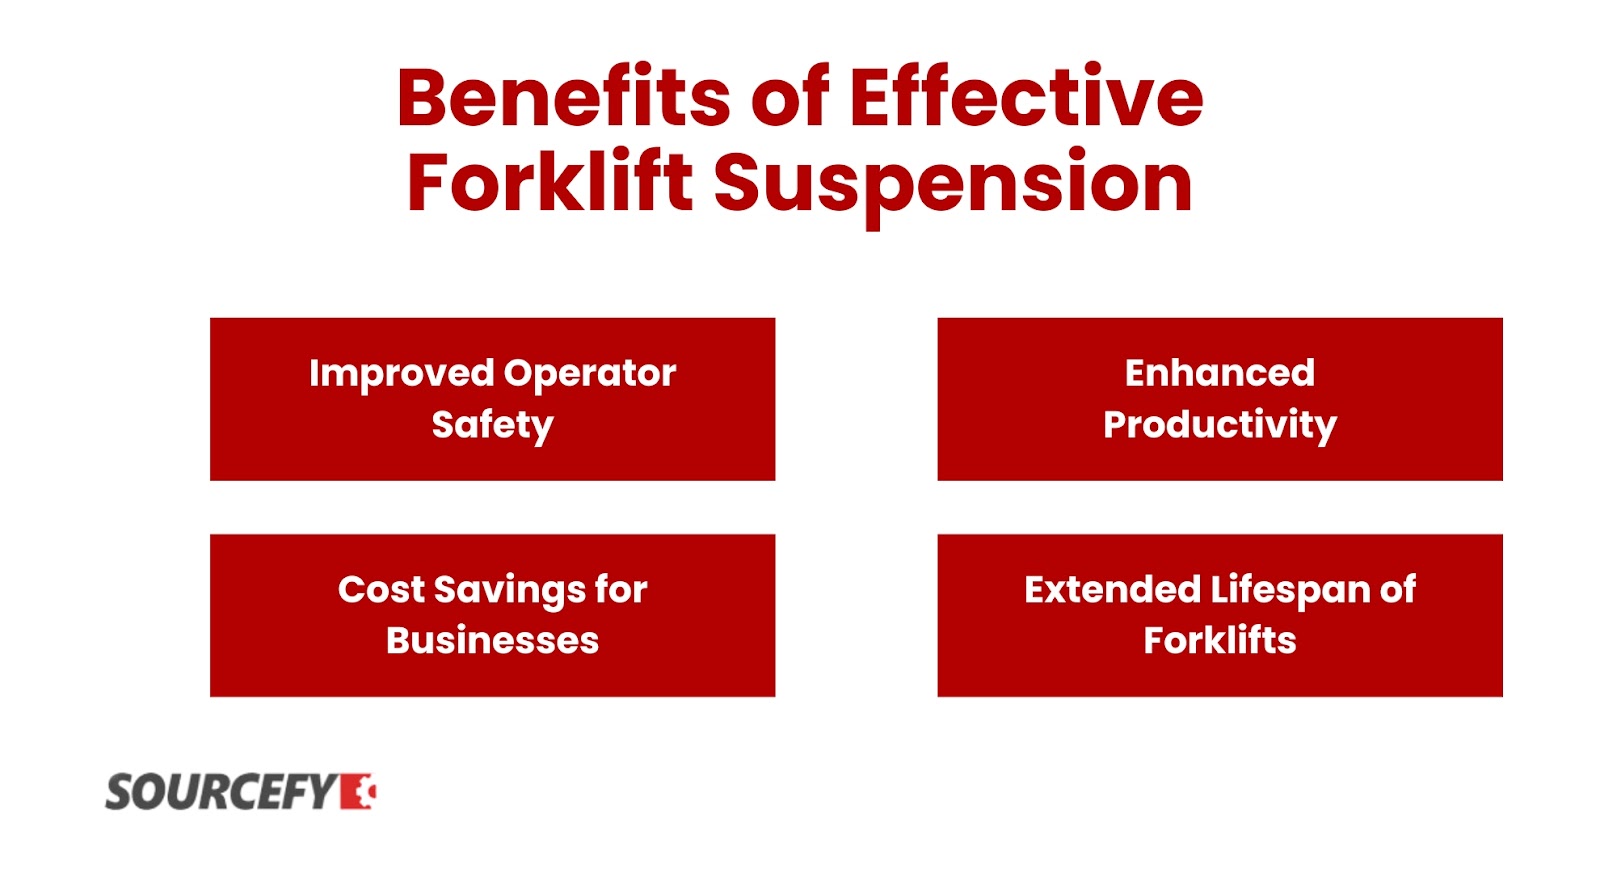 Benefits of Effective Forklift Suspension